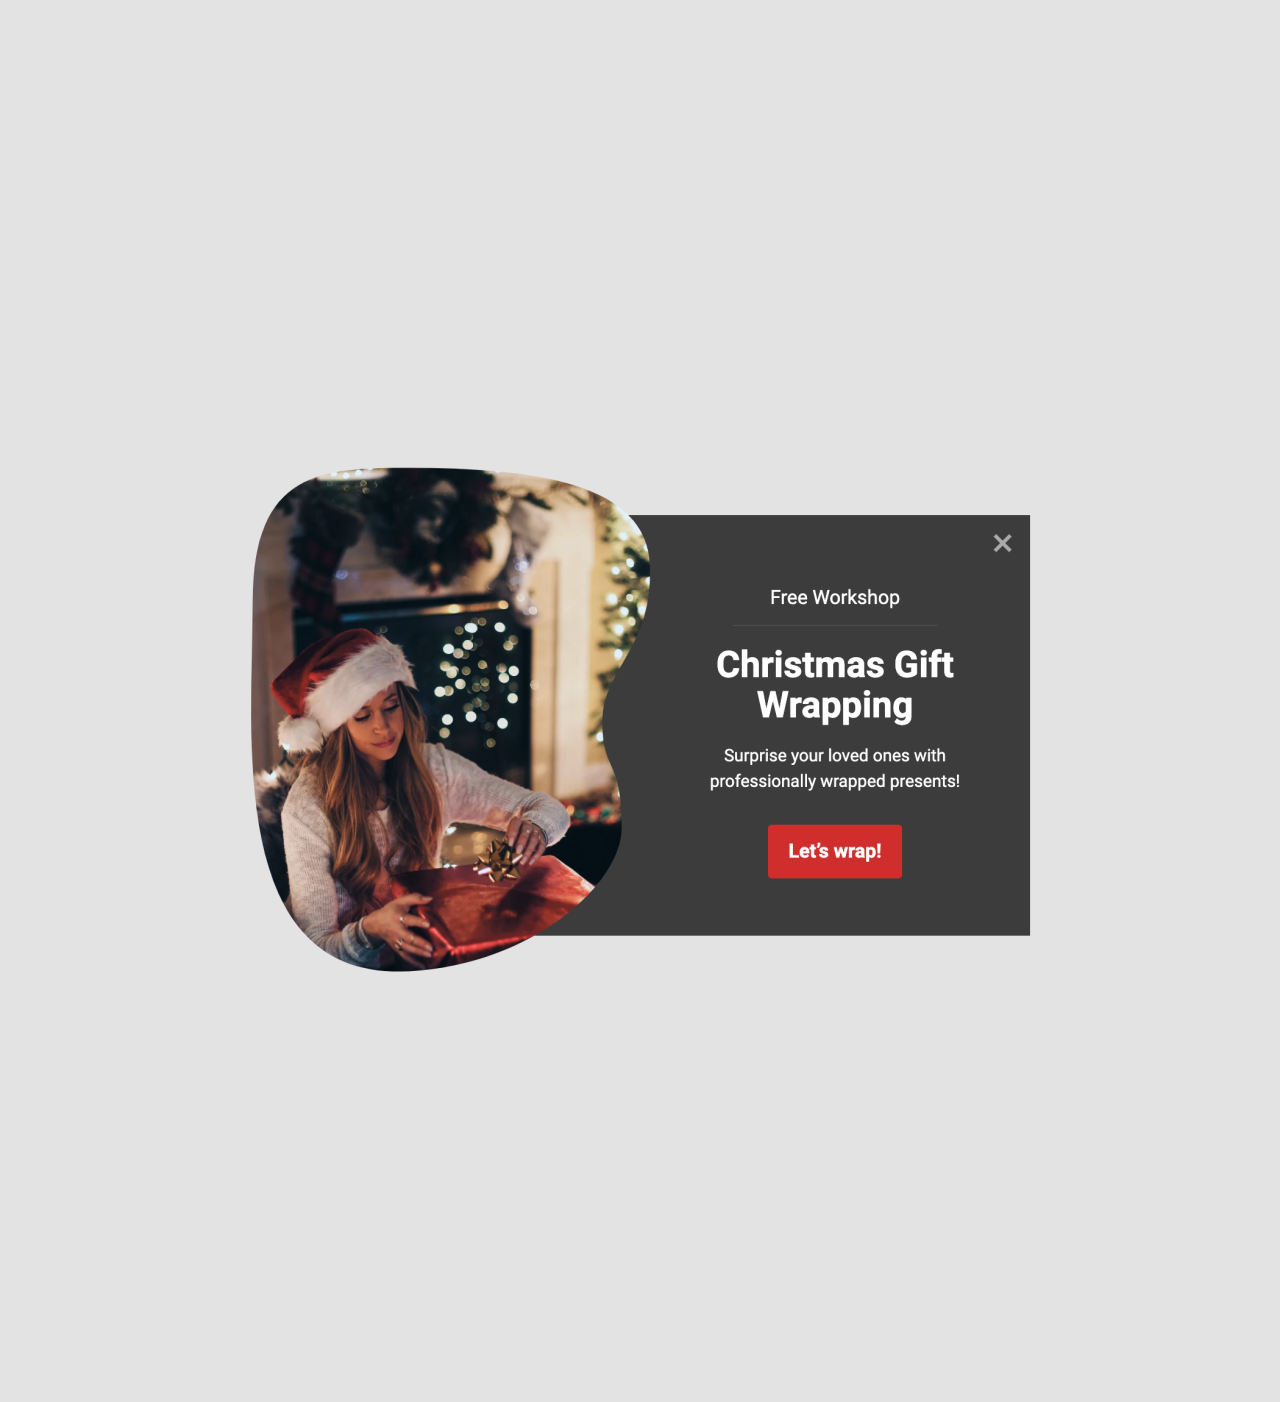 Invitación al webinar navideño plantilla creada por MailerLite